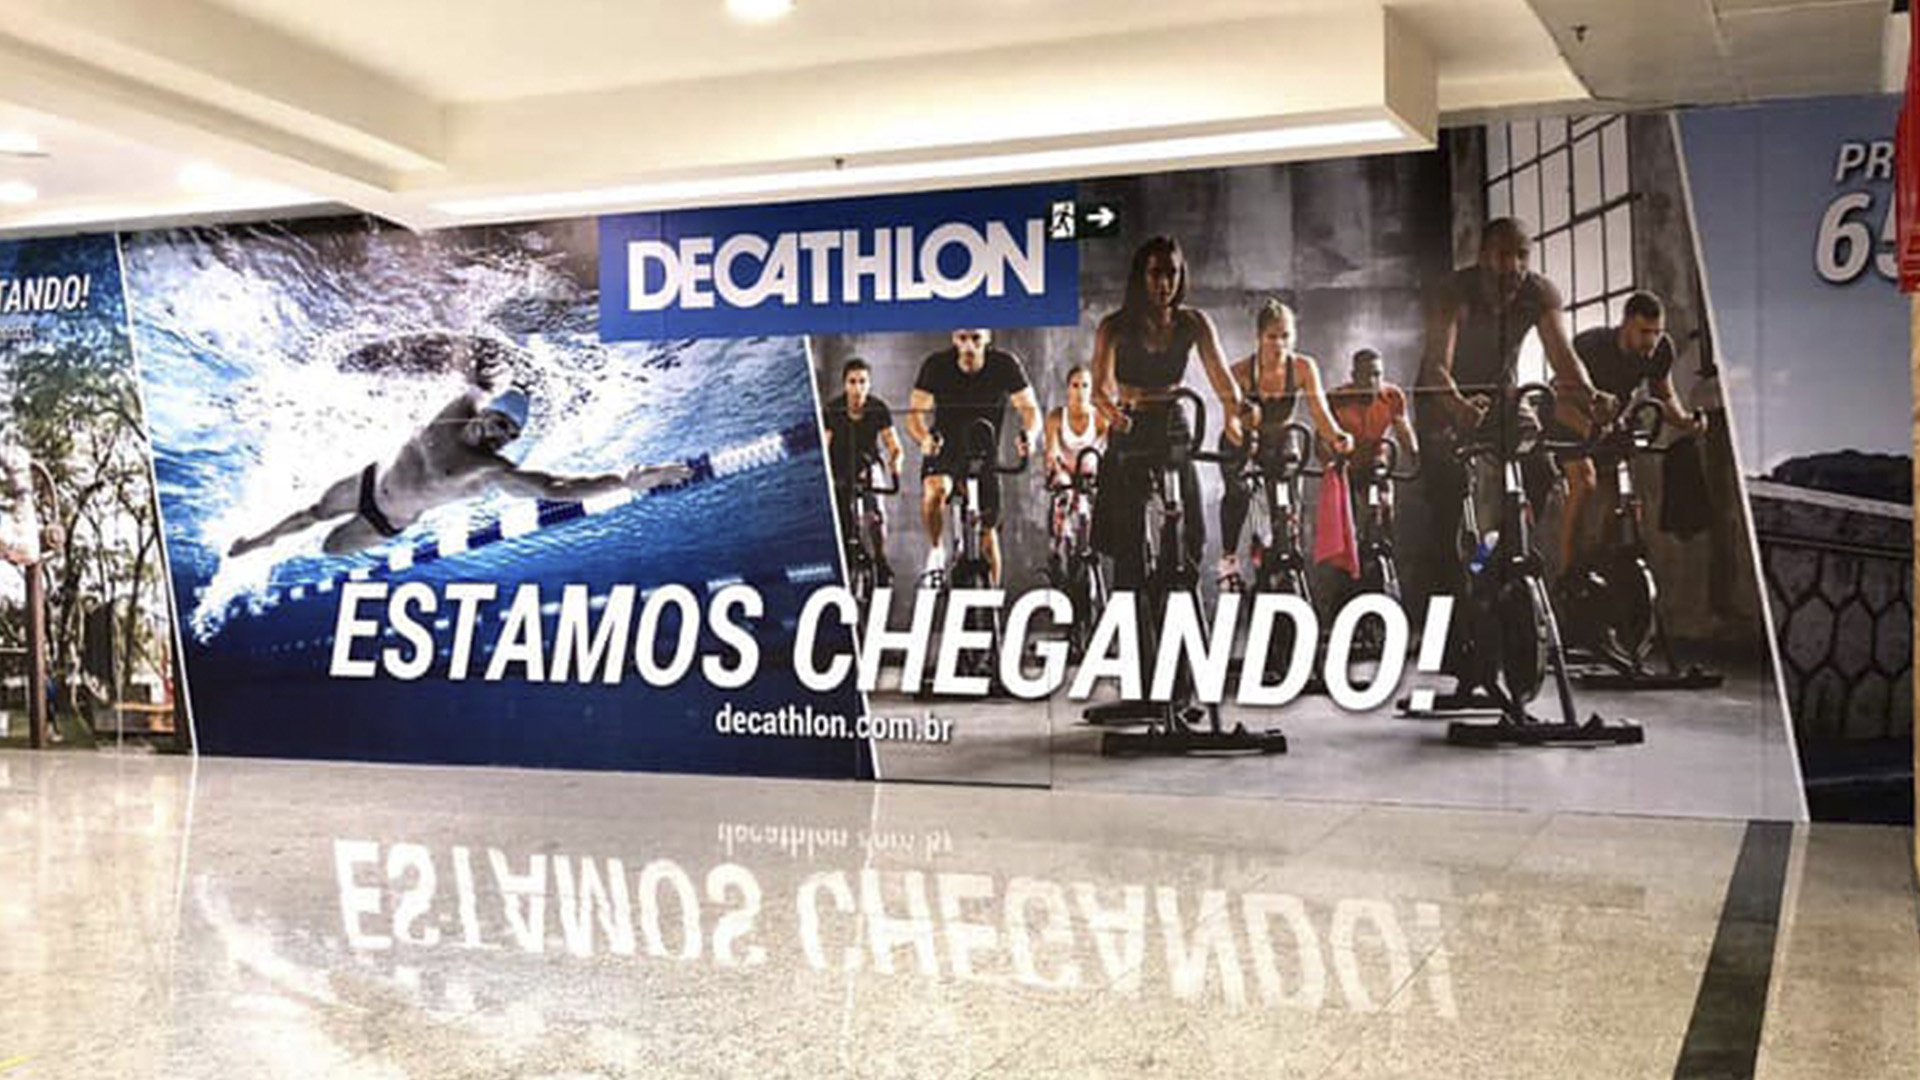 Ainda não conhece a nossa nova loja na Paulista? - Decathlon Brasil 